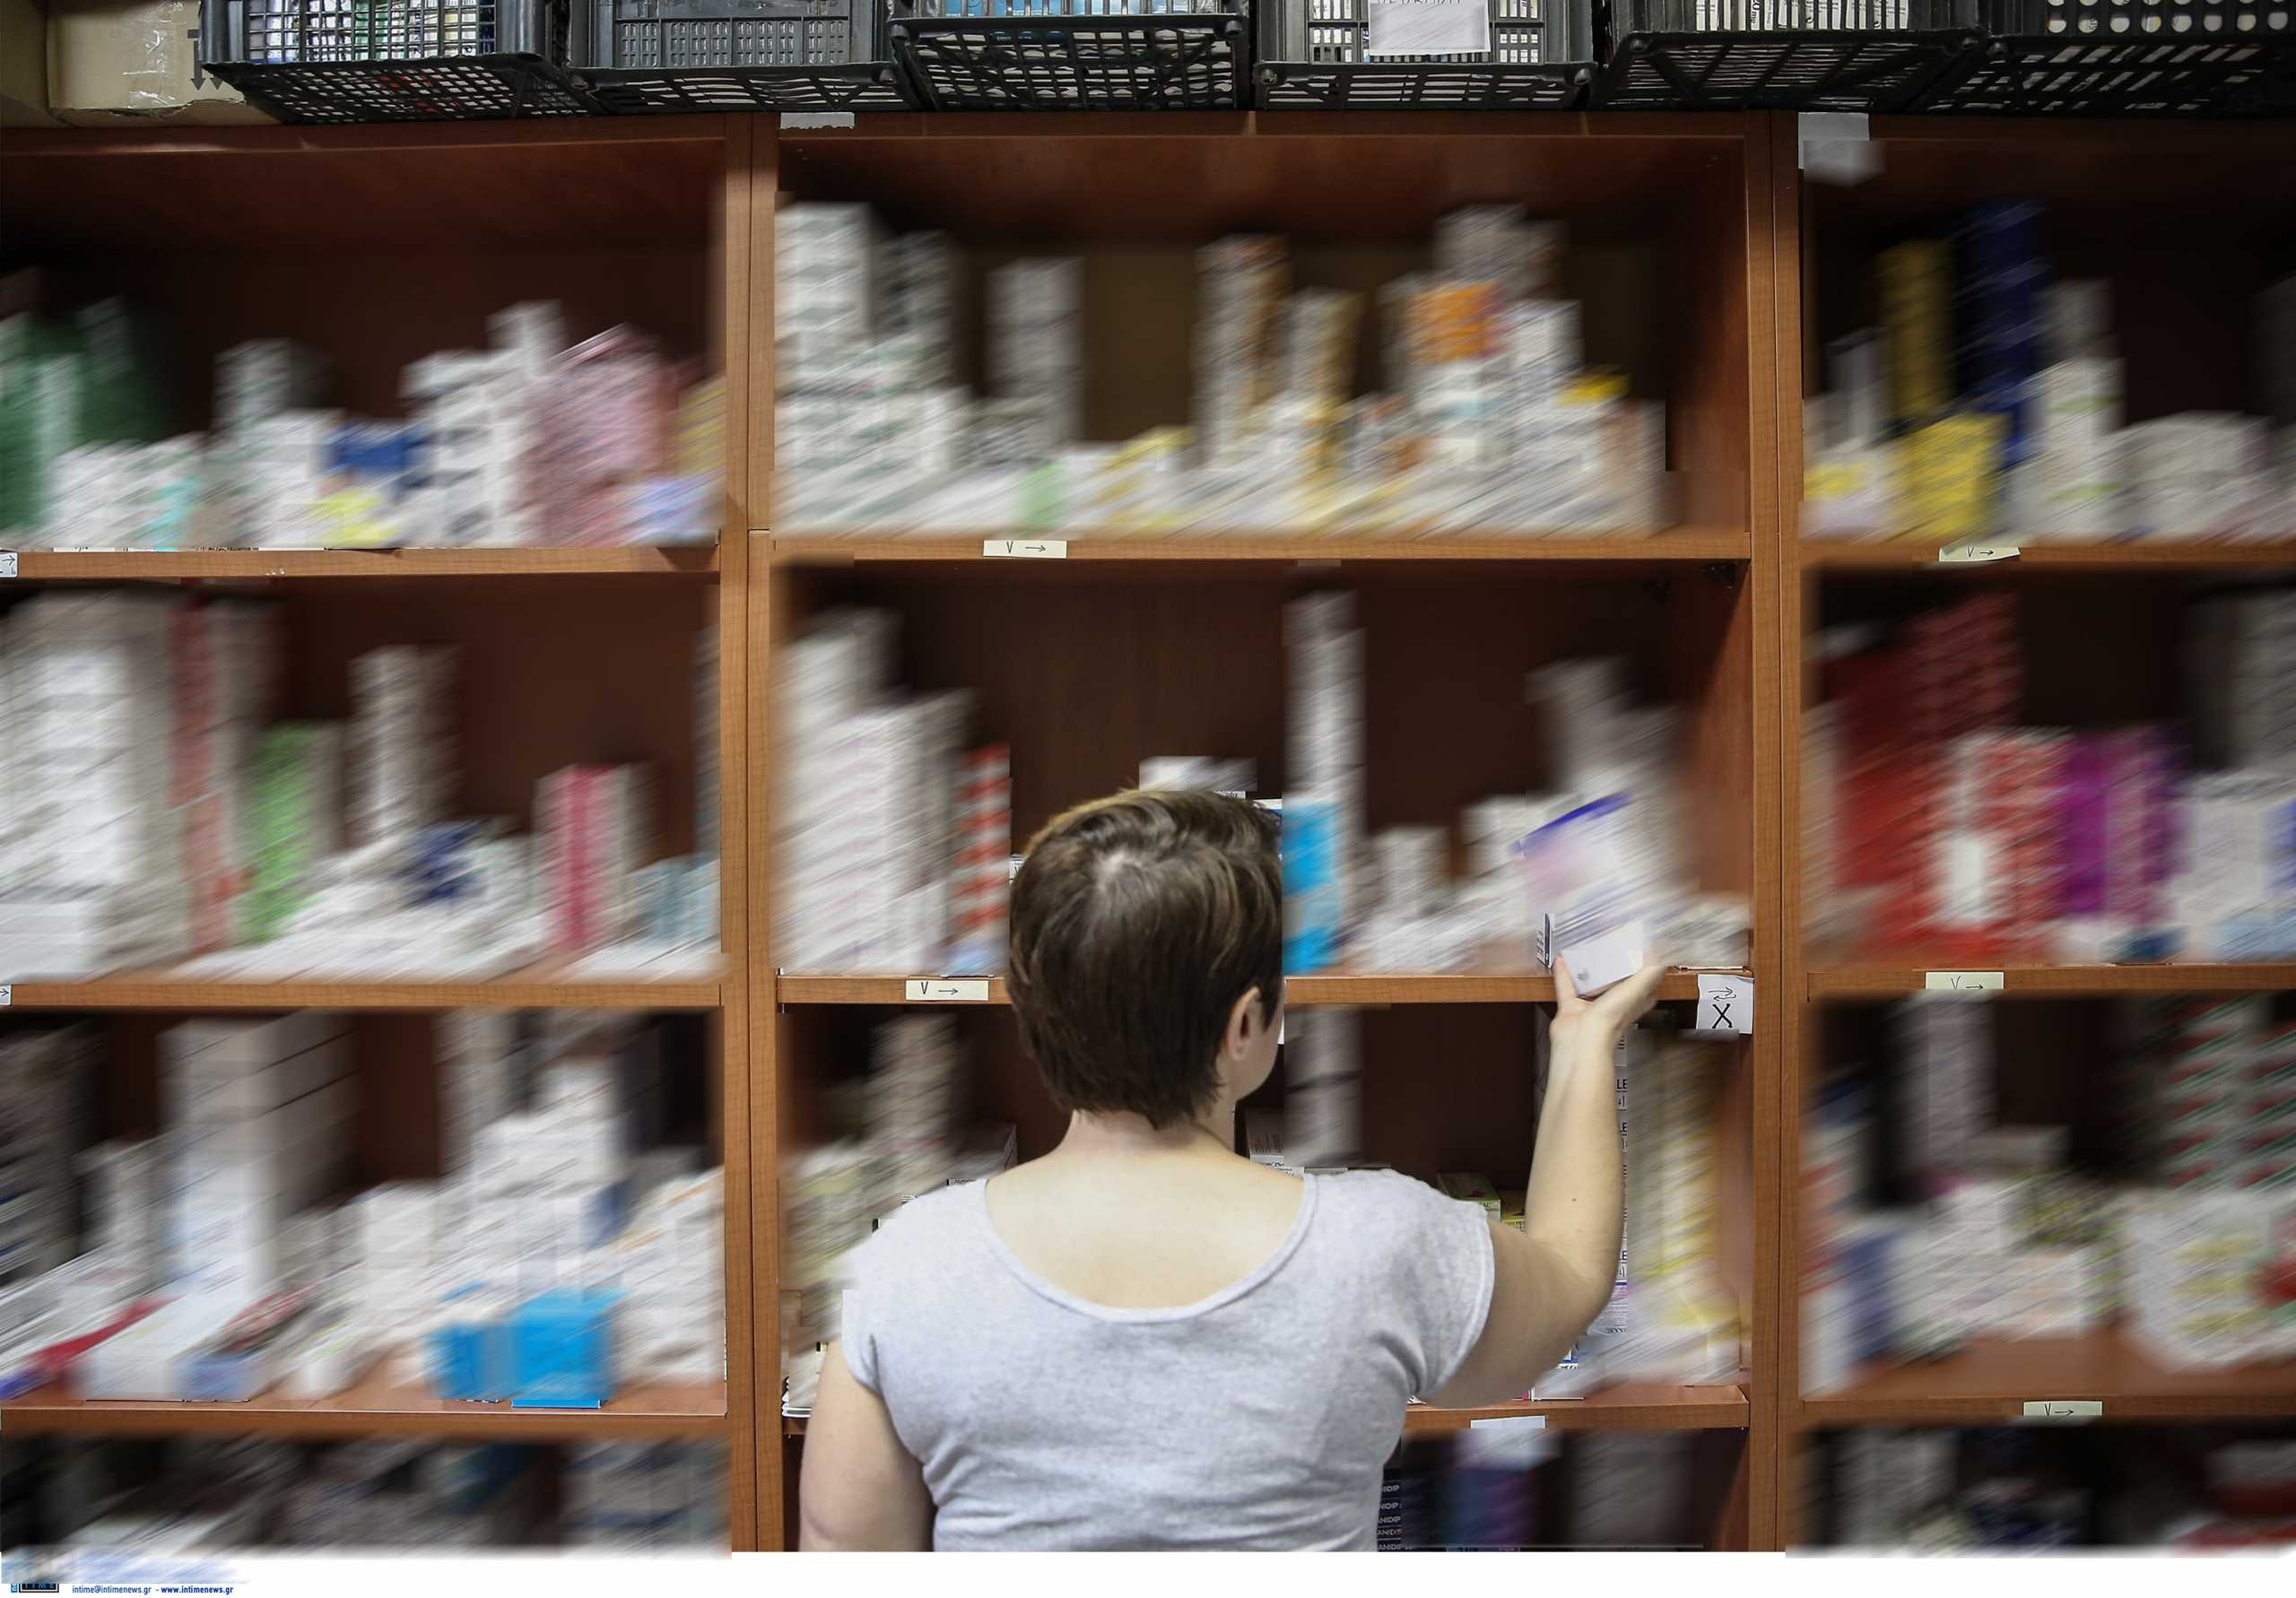 Θεσσαλονίκη: Ελλείψεις περισσότερων από 400 φαρμακευτικών σκευασμάτων – Τι απαντούν οι φαρμακοποιοί